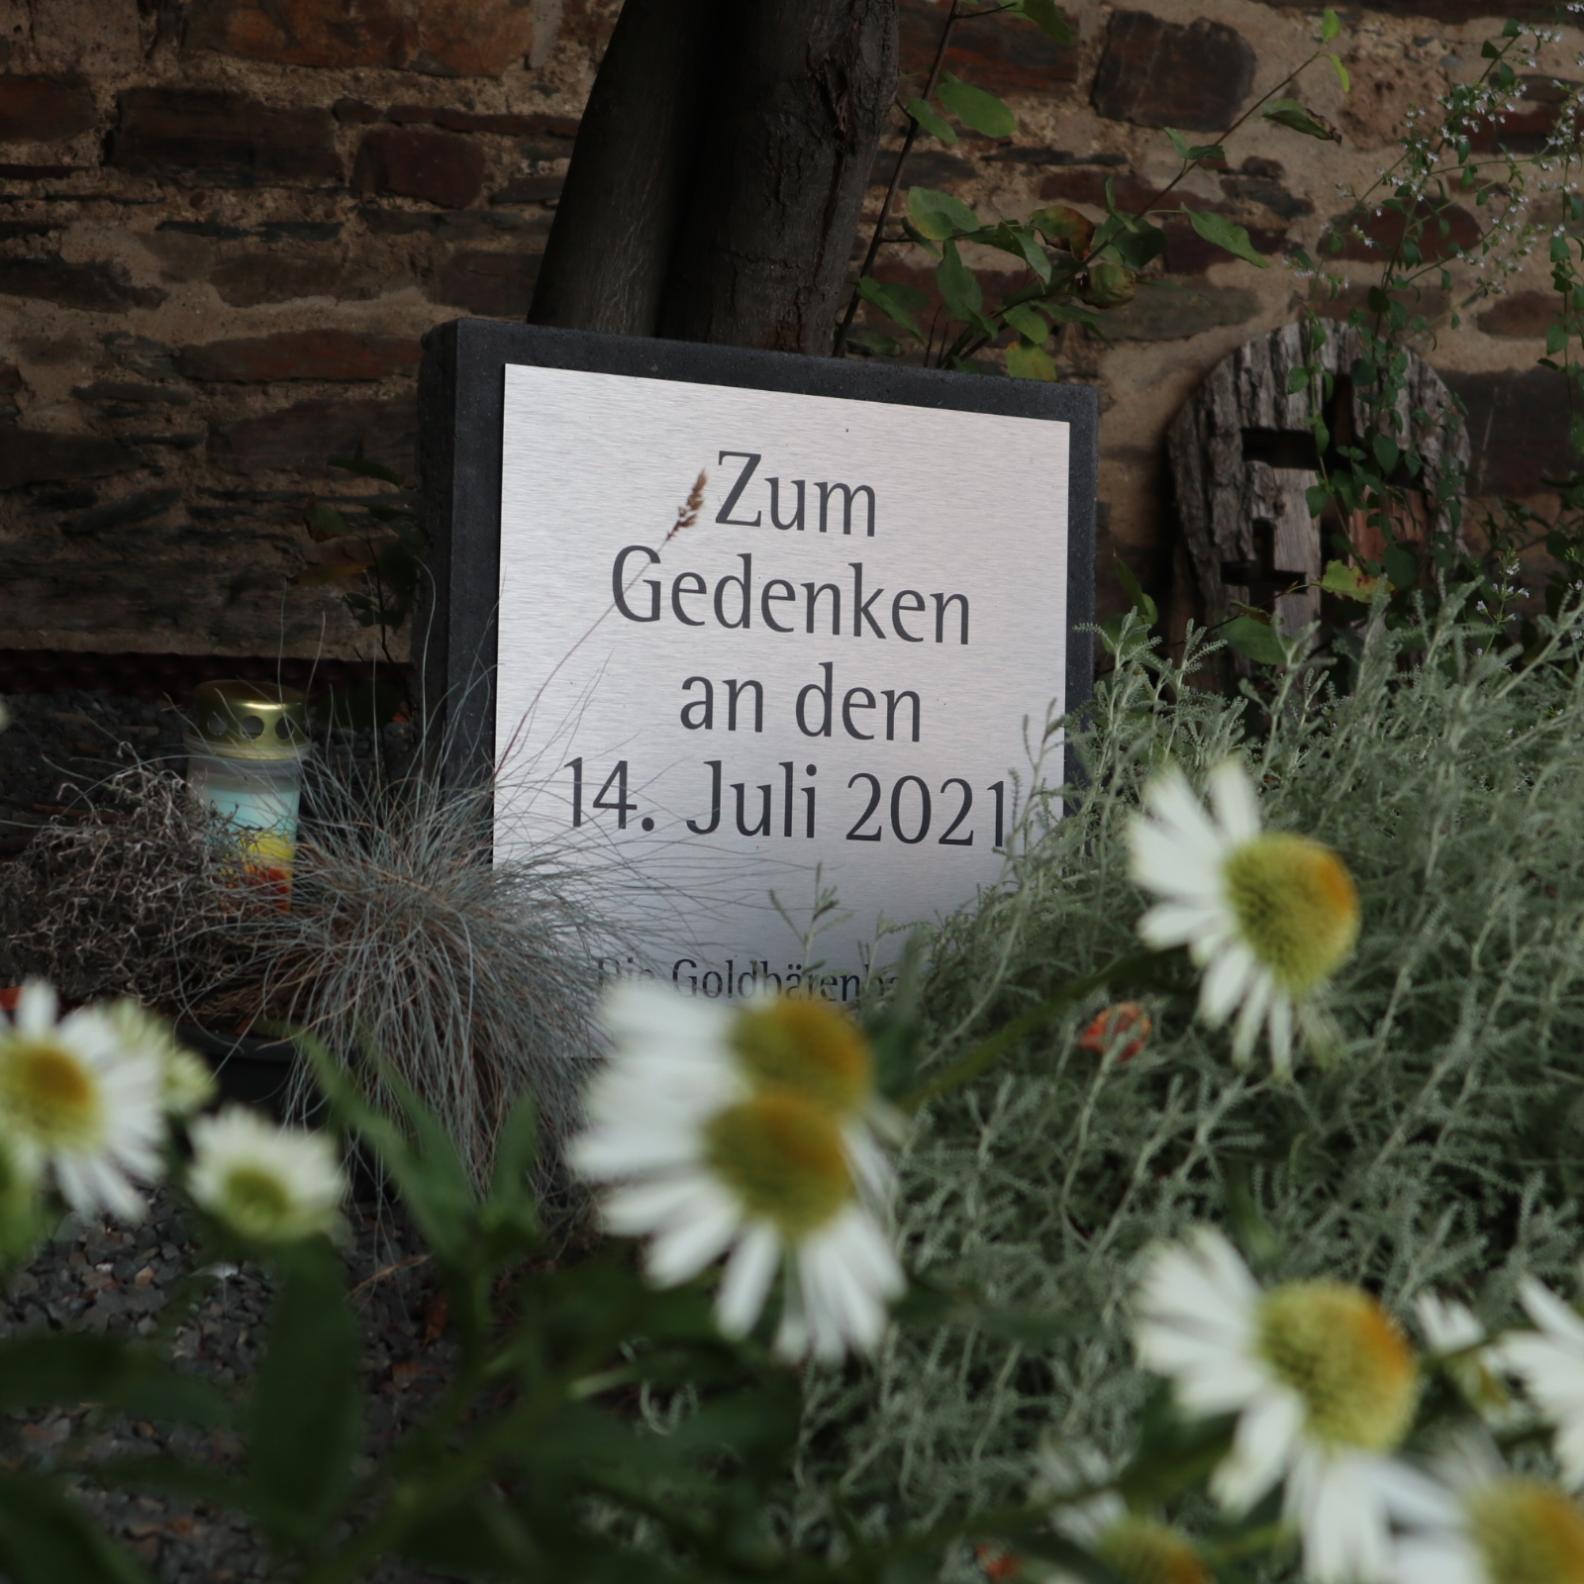 Man sieht eine Tafel auf der steht 'zum Gedenken an den 14. Juli 2021'; im Vordergrund Blumen, daneben eine Kerze.